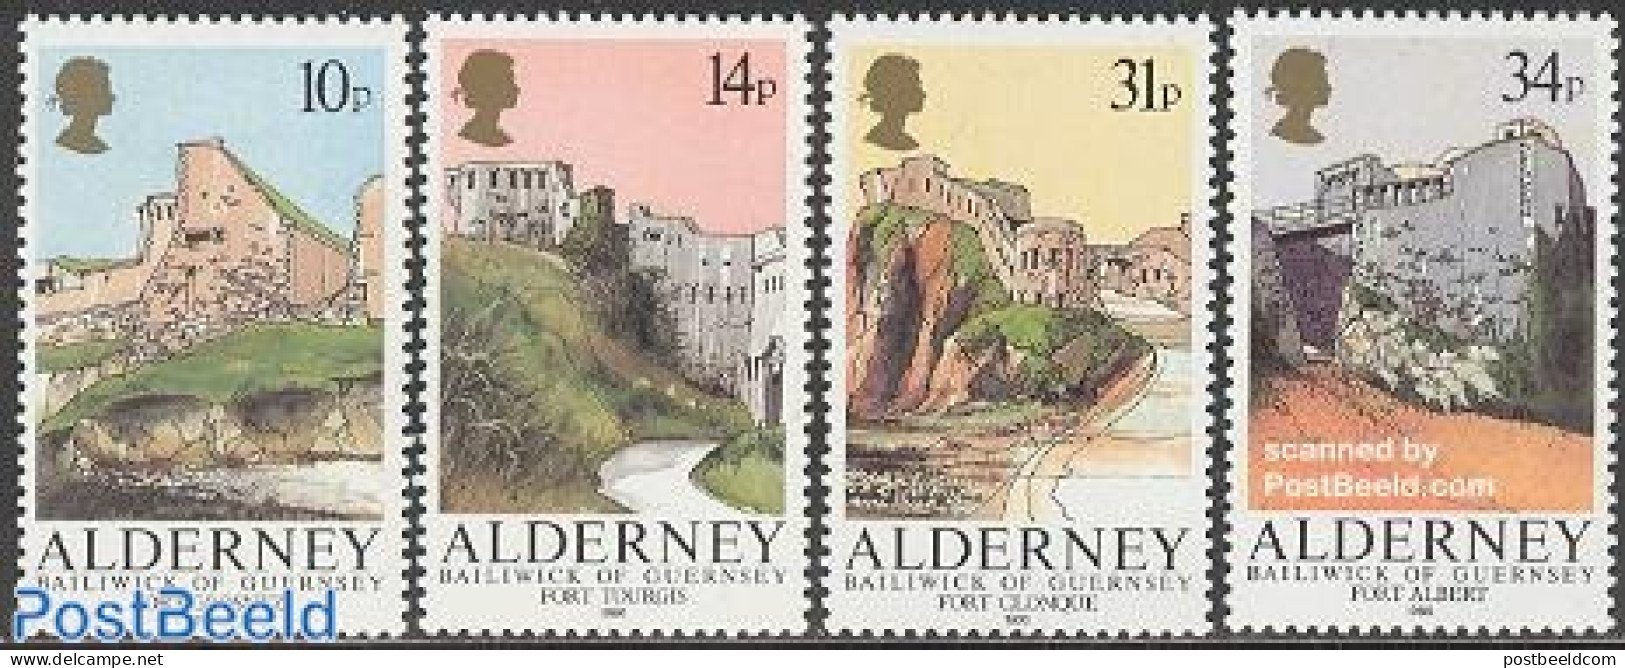 Alderney 1986 Fortifications 4v, Mint NH, Art - Castles & Fortifications - Castles